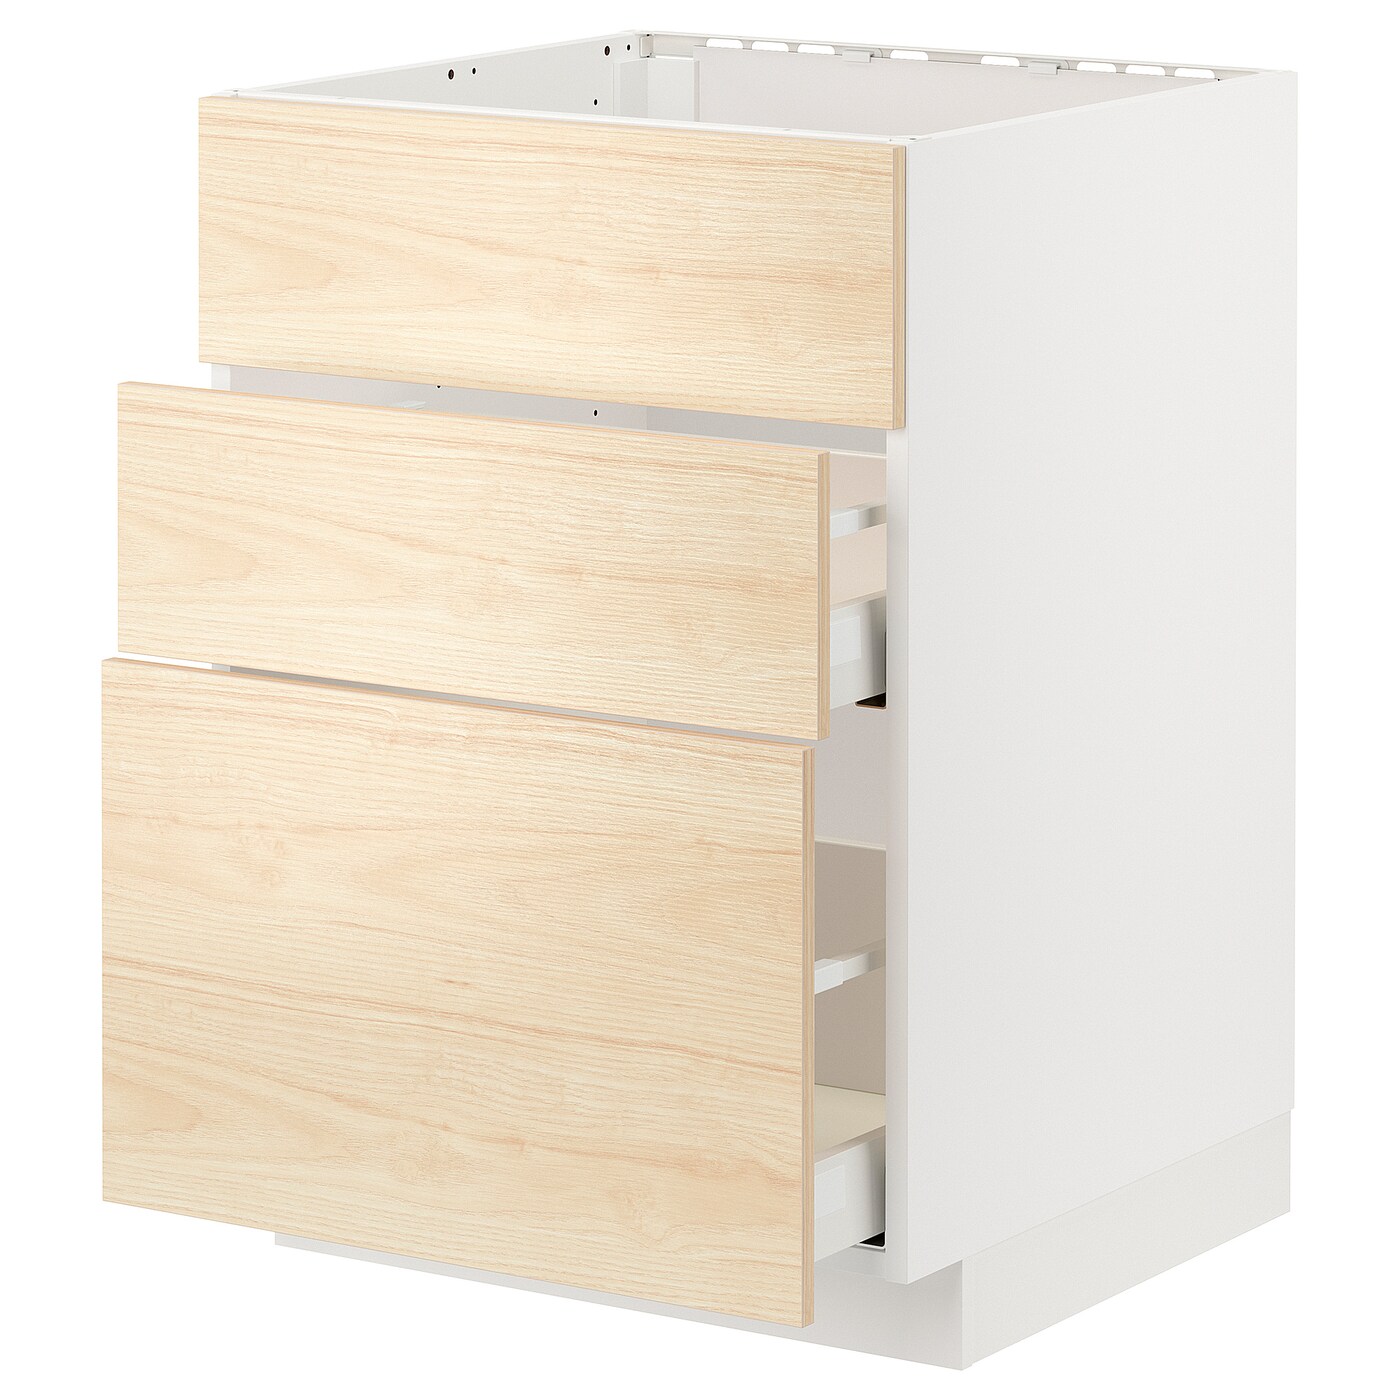 Напольный шкаф - IKEA METOD MAXIMERA, 60x62x80см, белый/светлый ясень, МЕТОД МАКСИМЕРА ИКЕА